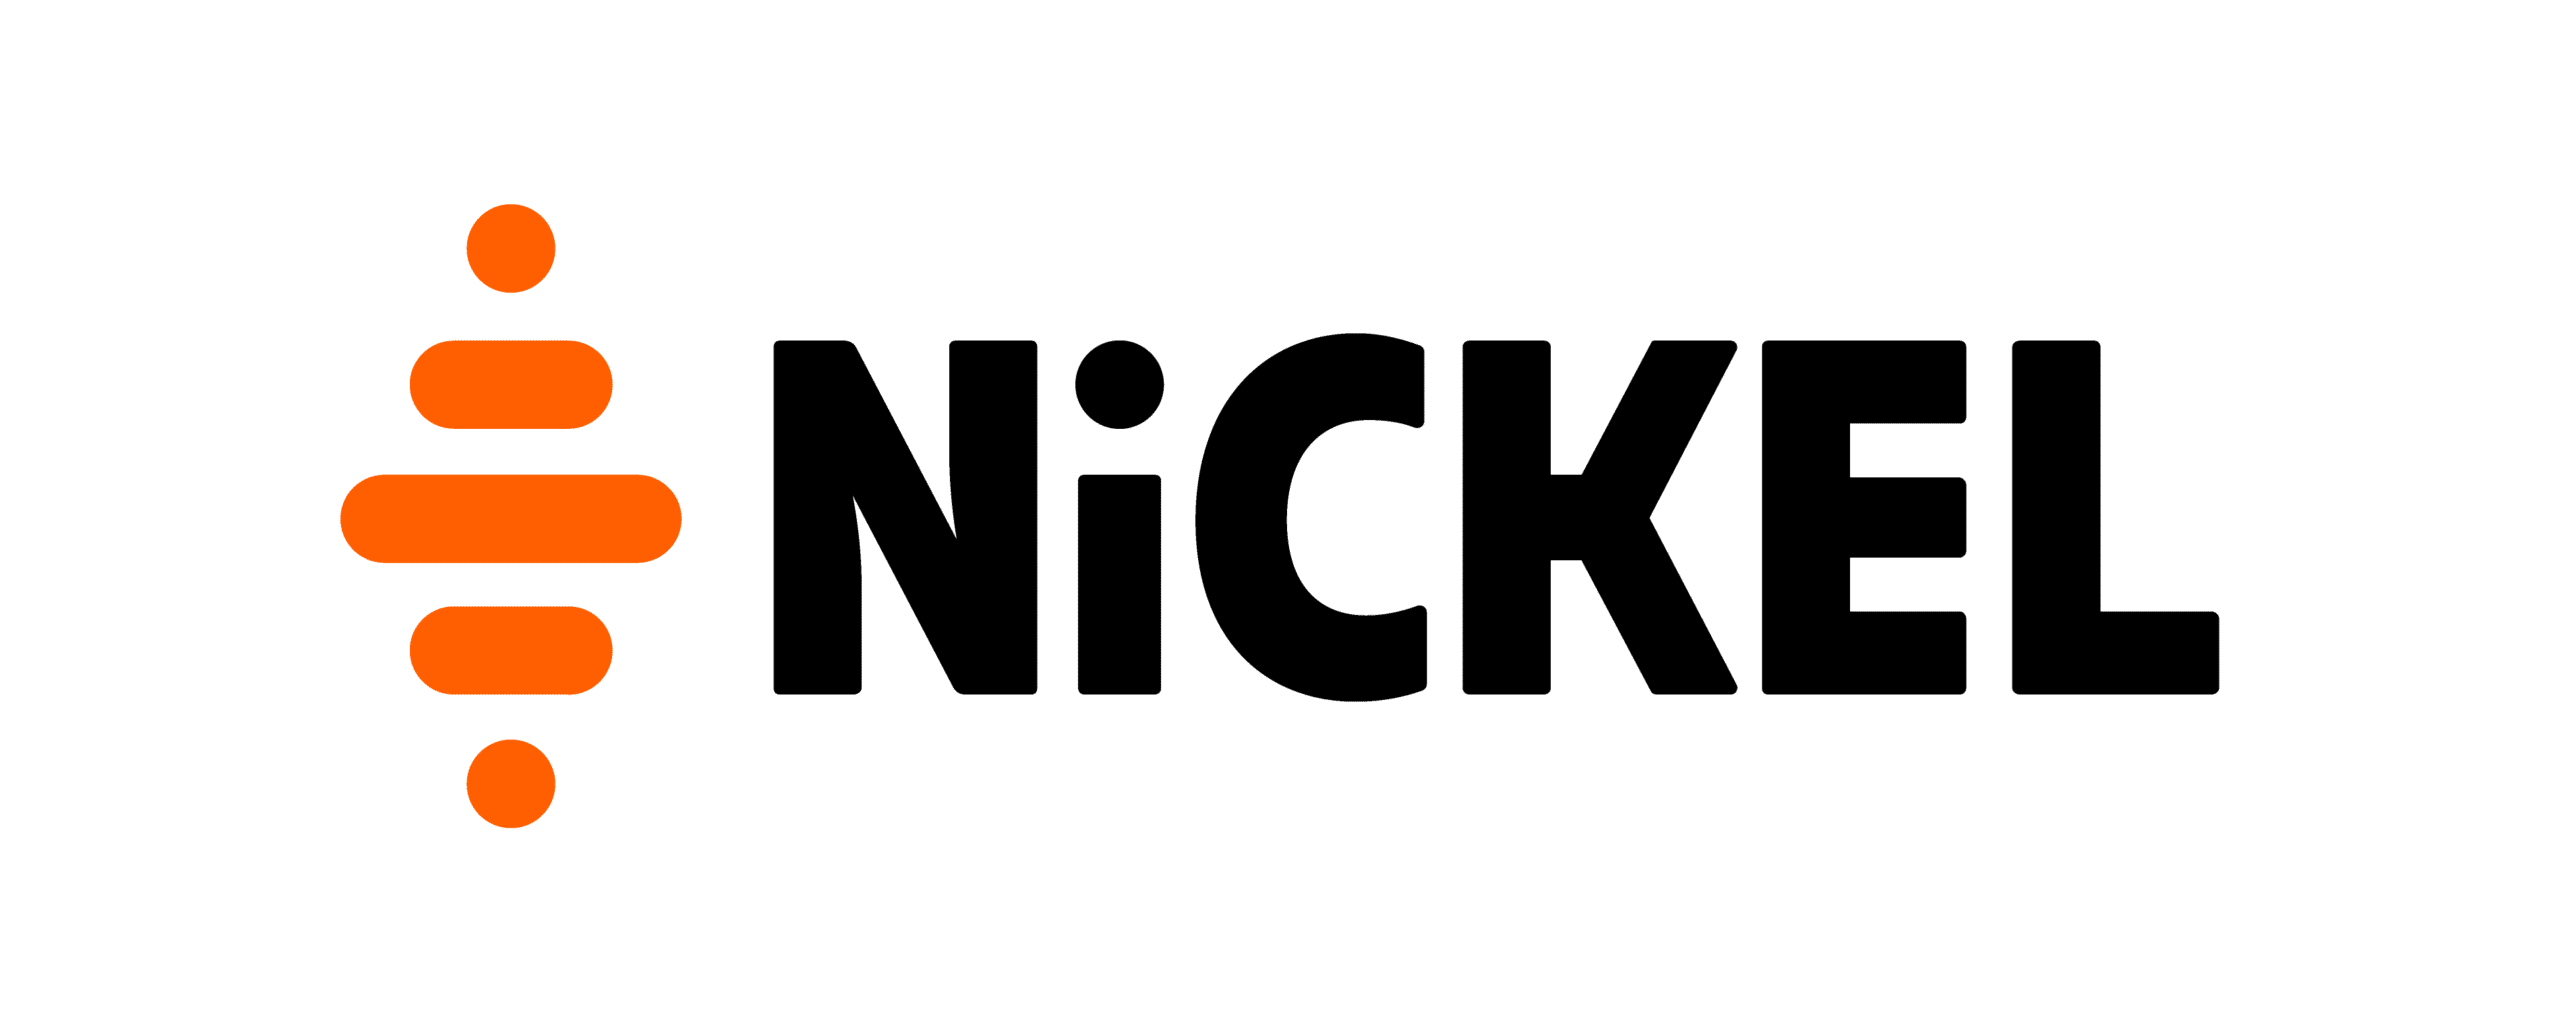 logo nickel 2